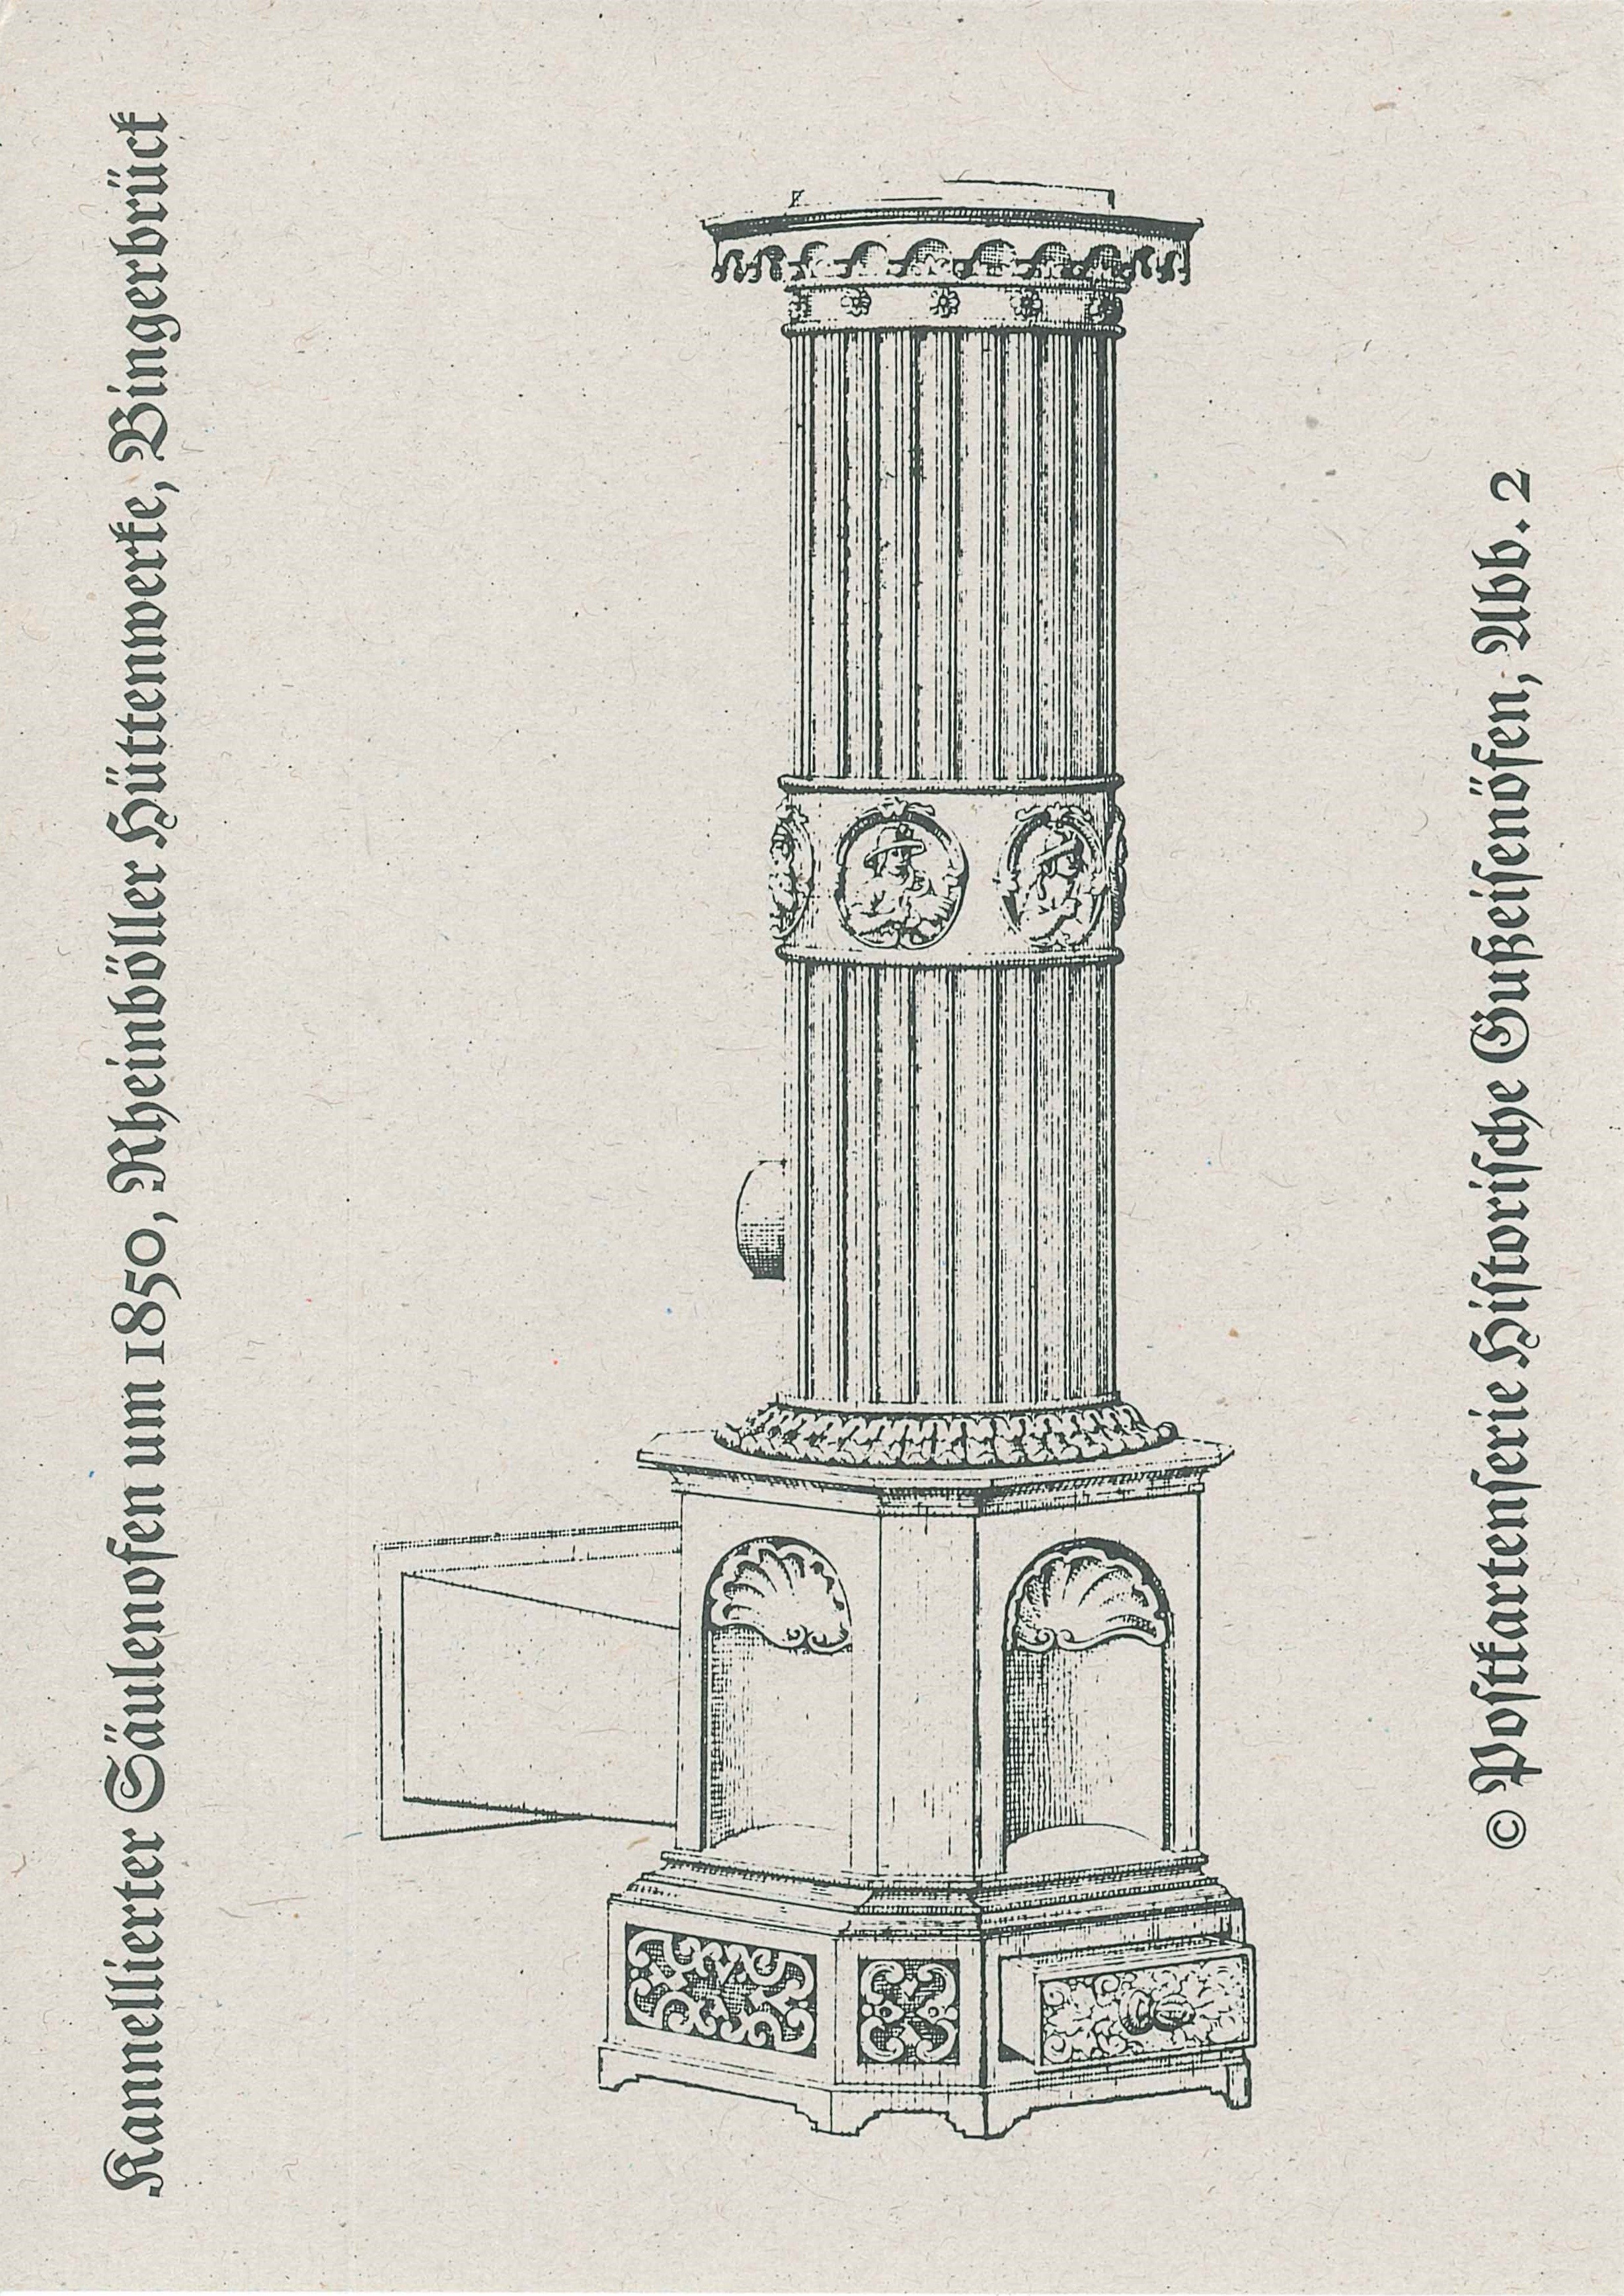 Postkartenserie "Historische Gußeisenöfen, Abb. 2", Deutsches Eisenofenmuseum, Neu-Ulm (REM CC BY-NC-SA)